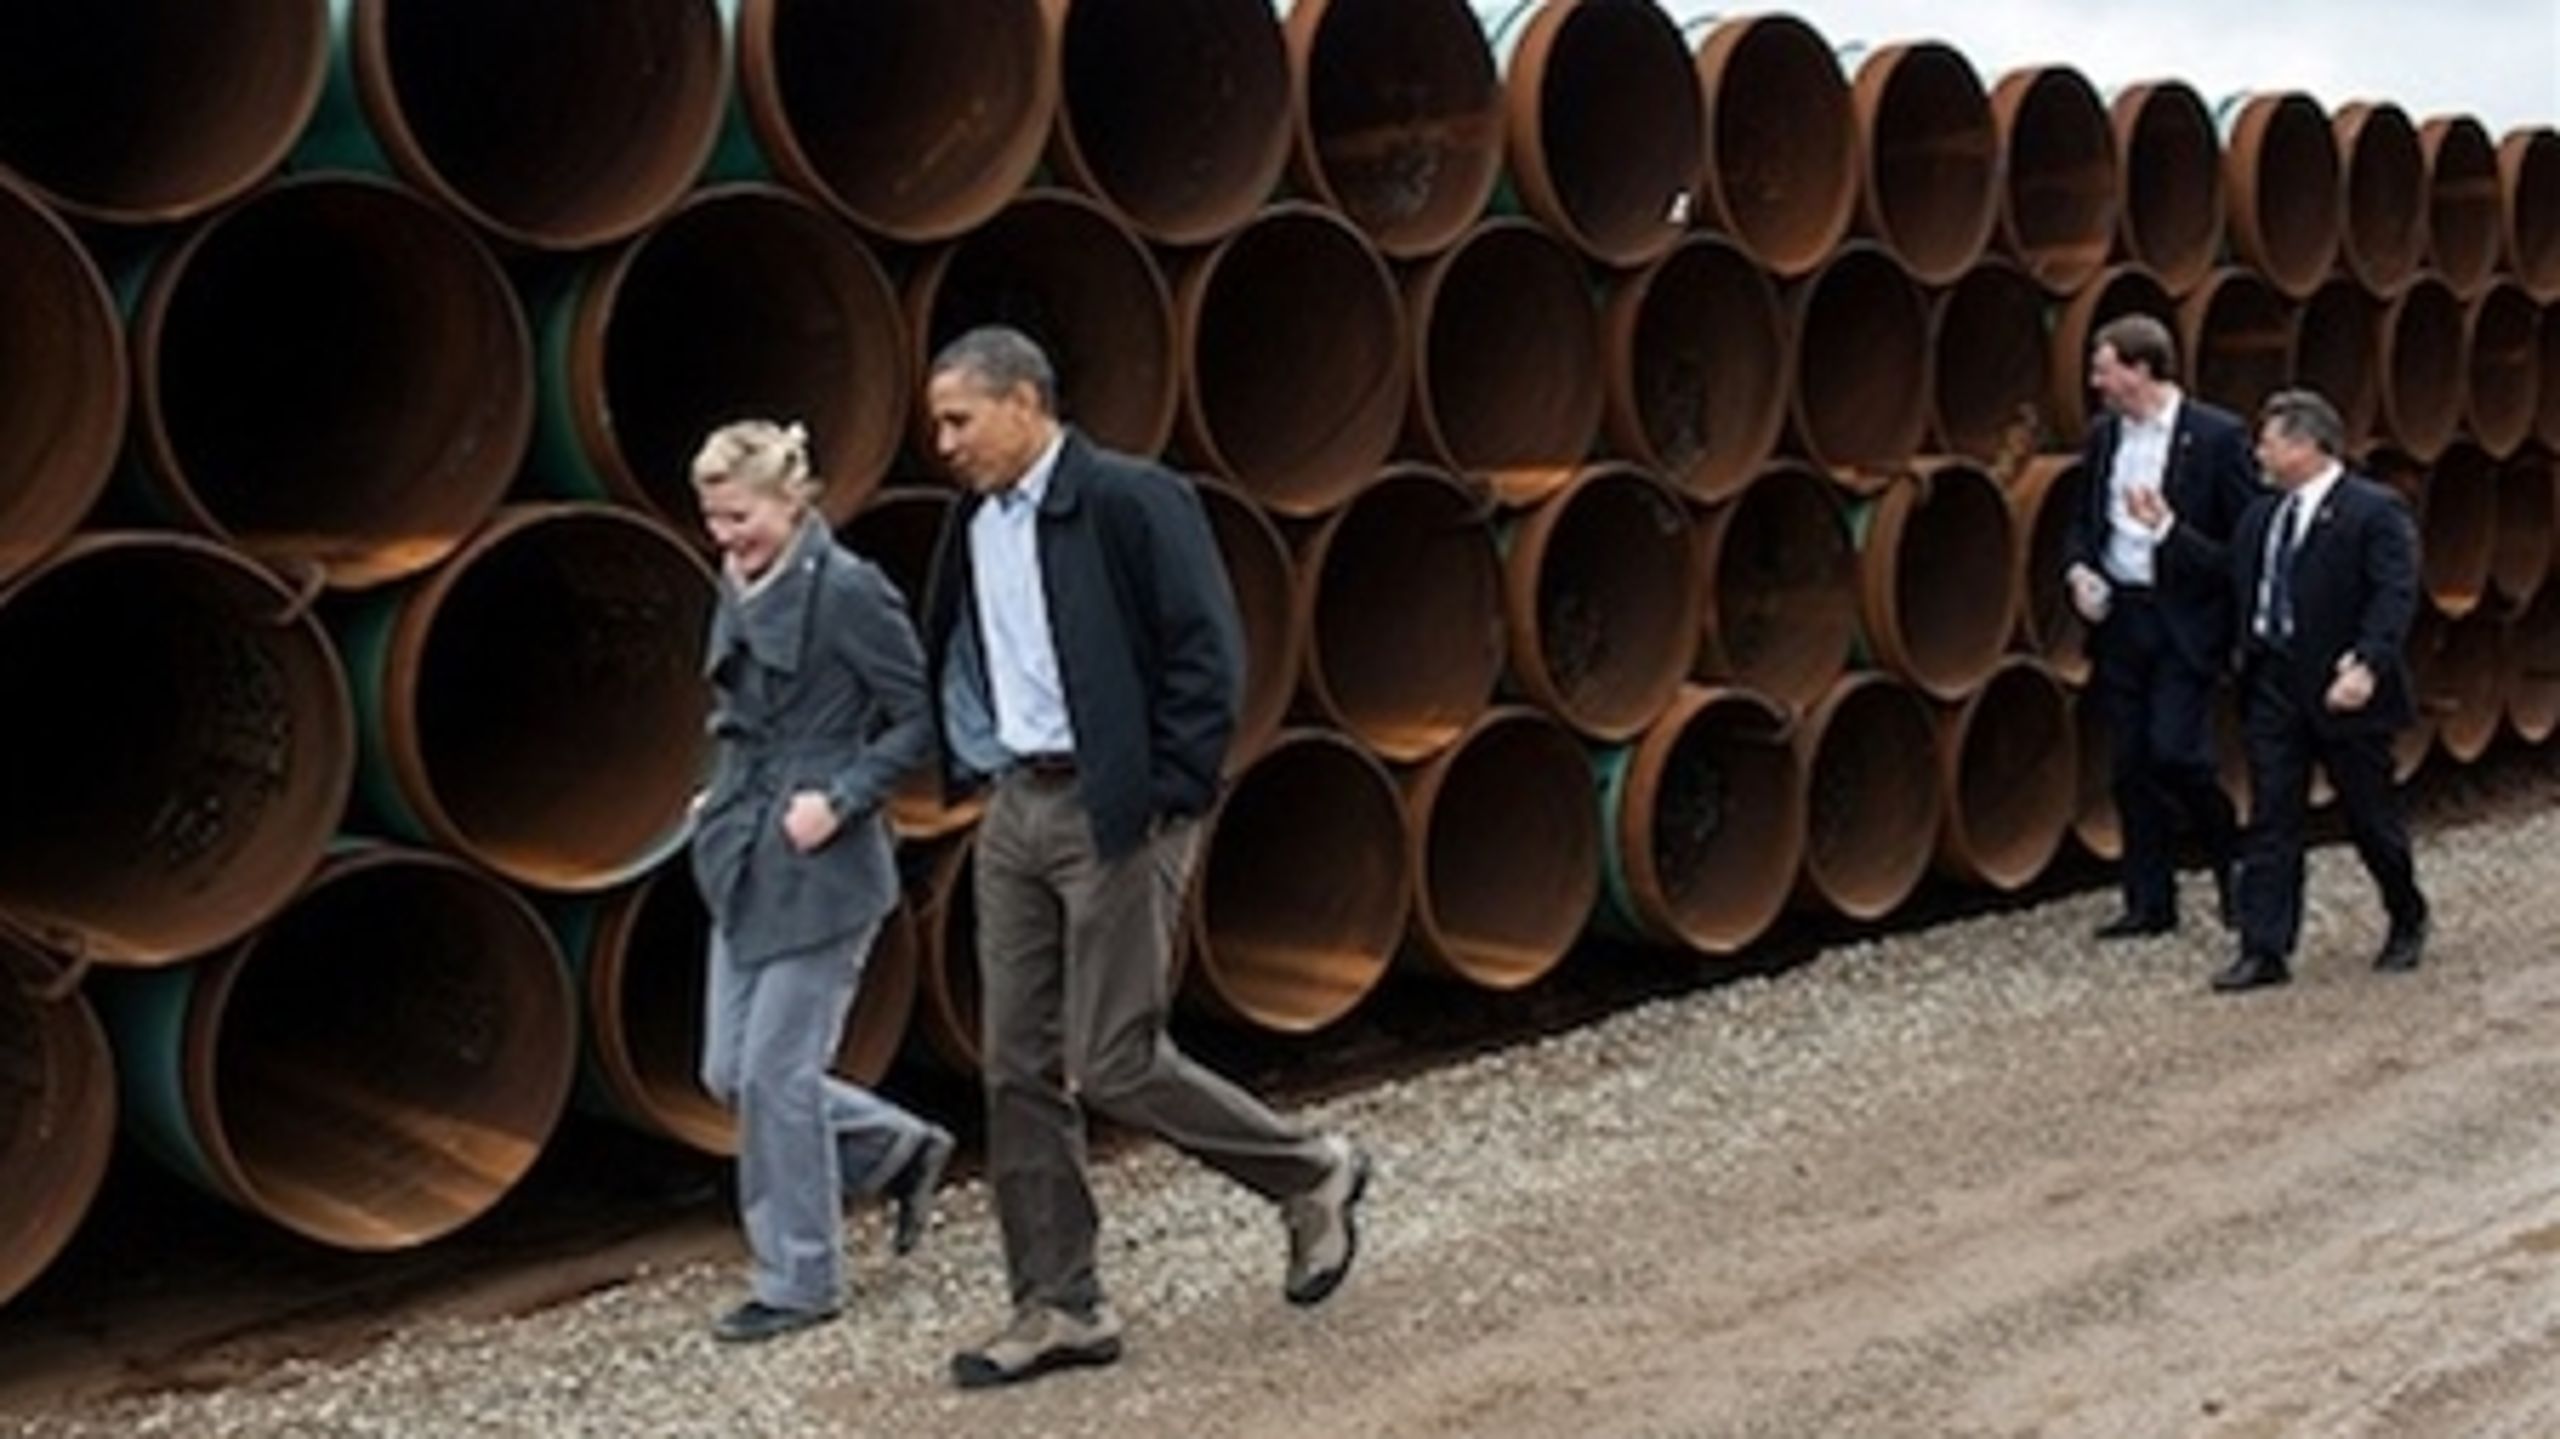 Obama skal vælge mellem klimamæssige, økonomiske og politiske hensyn i spørgsmålet om Keystone XL-rørledningen.